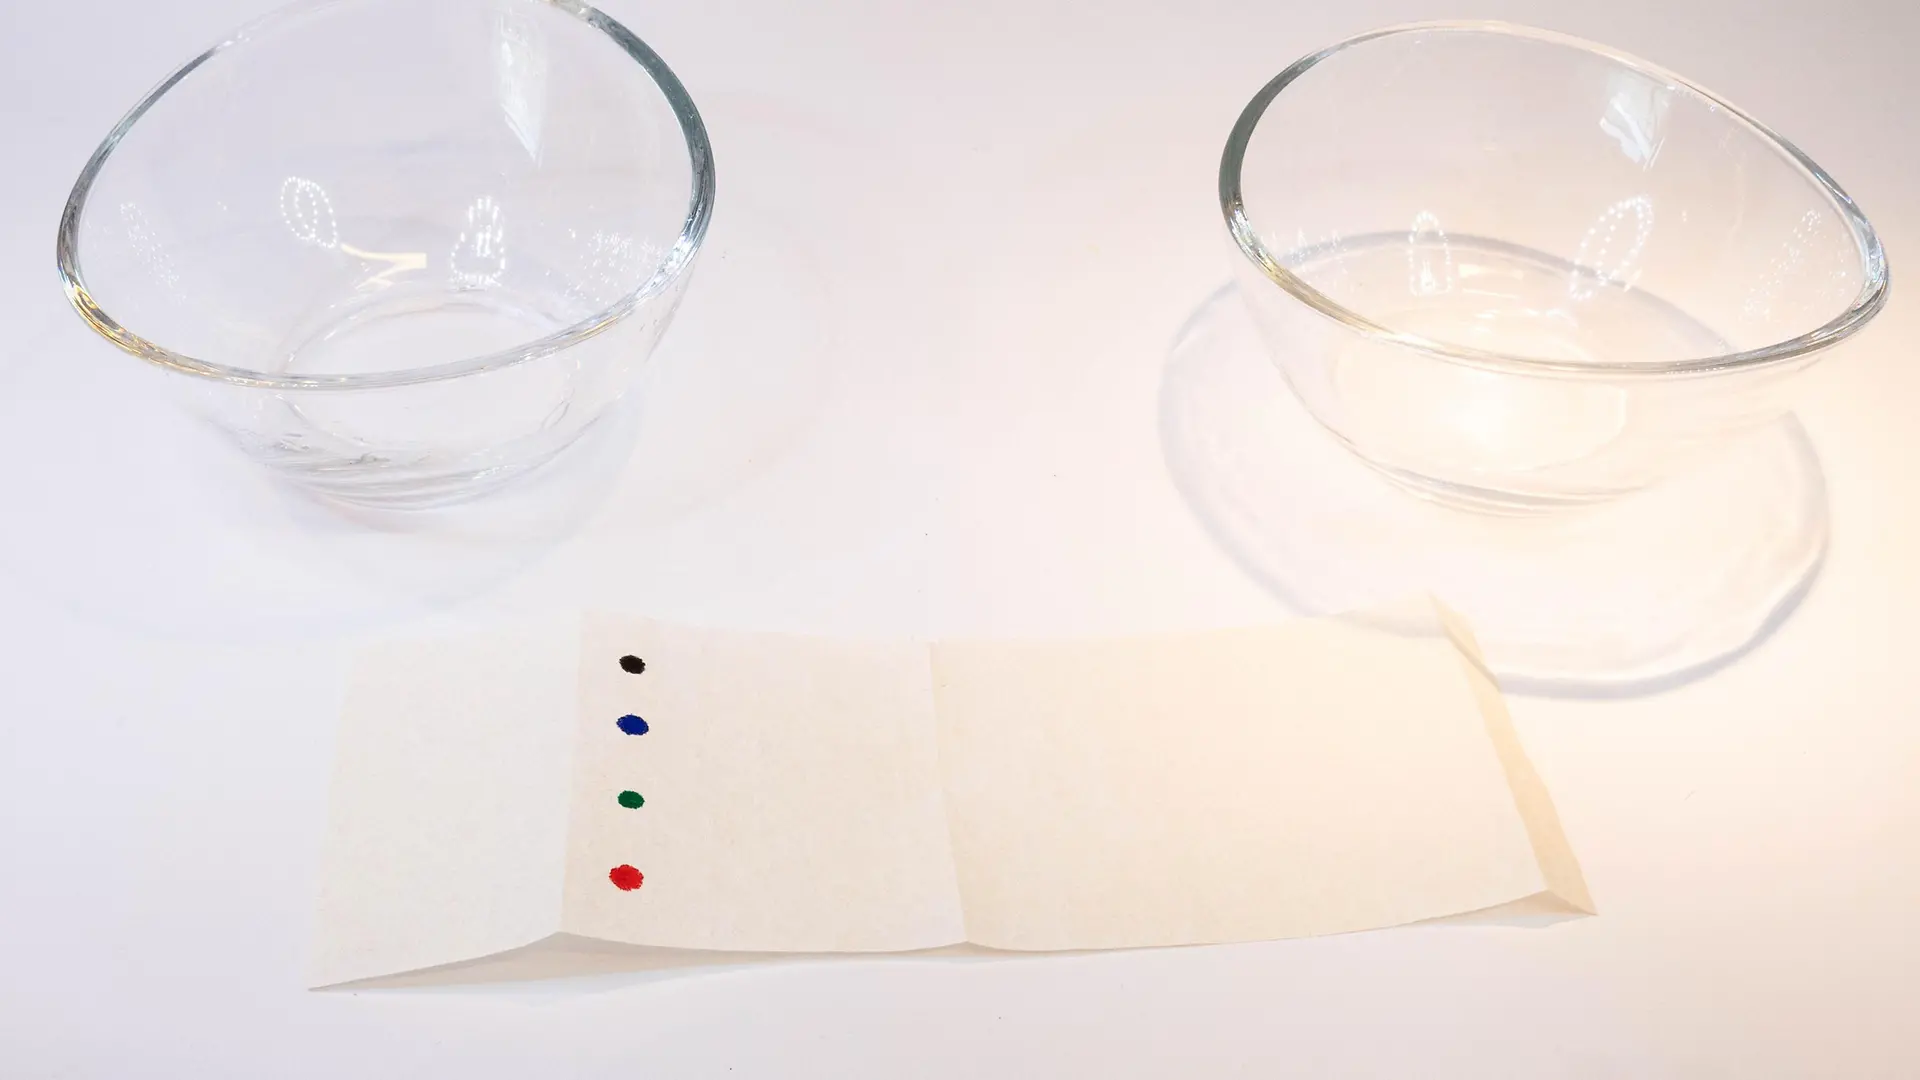 tira de papel con puntos coloridos frente a dos tazones de vidrio